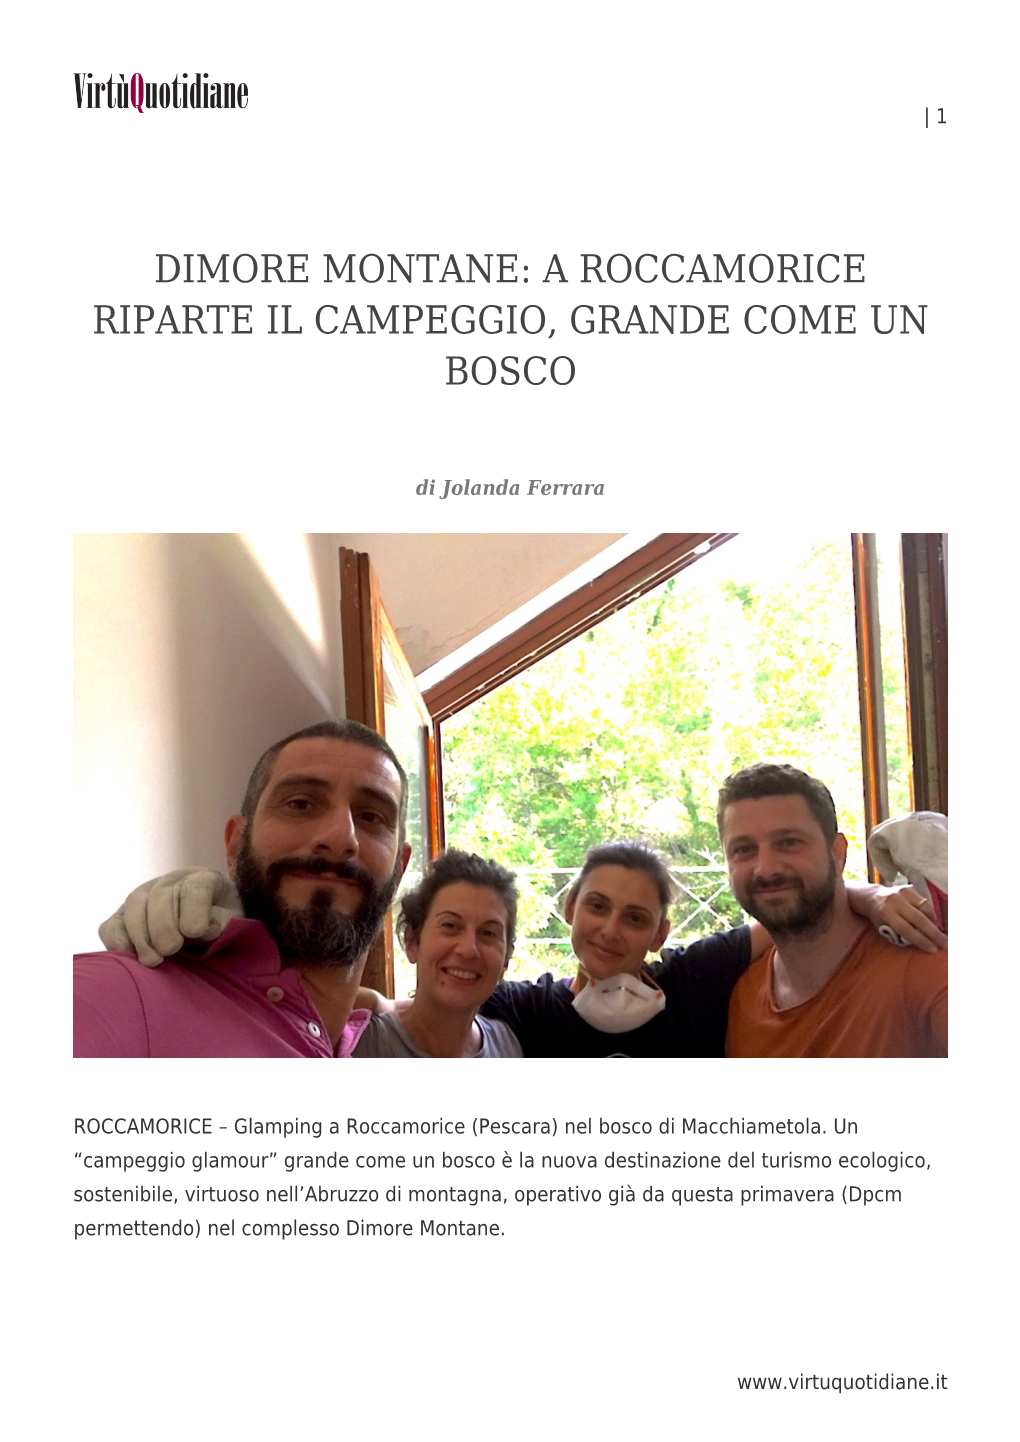 Dimore Montane: a Roccamorice Riparte Il Campeggio, Grande Come Un Bosco